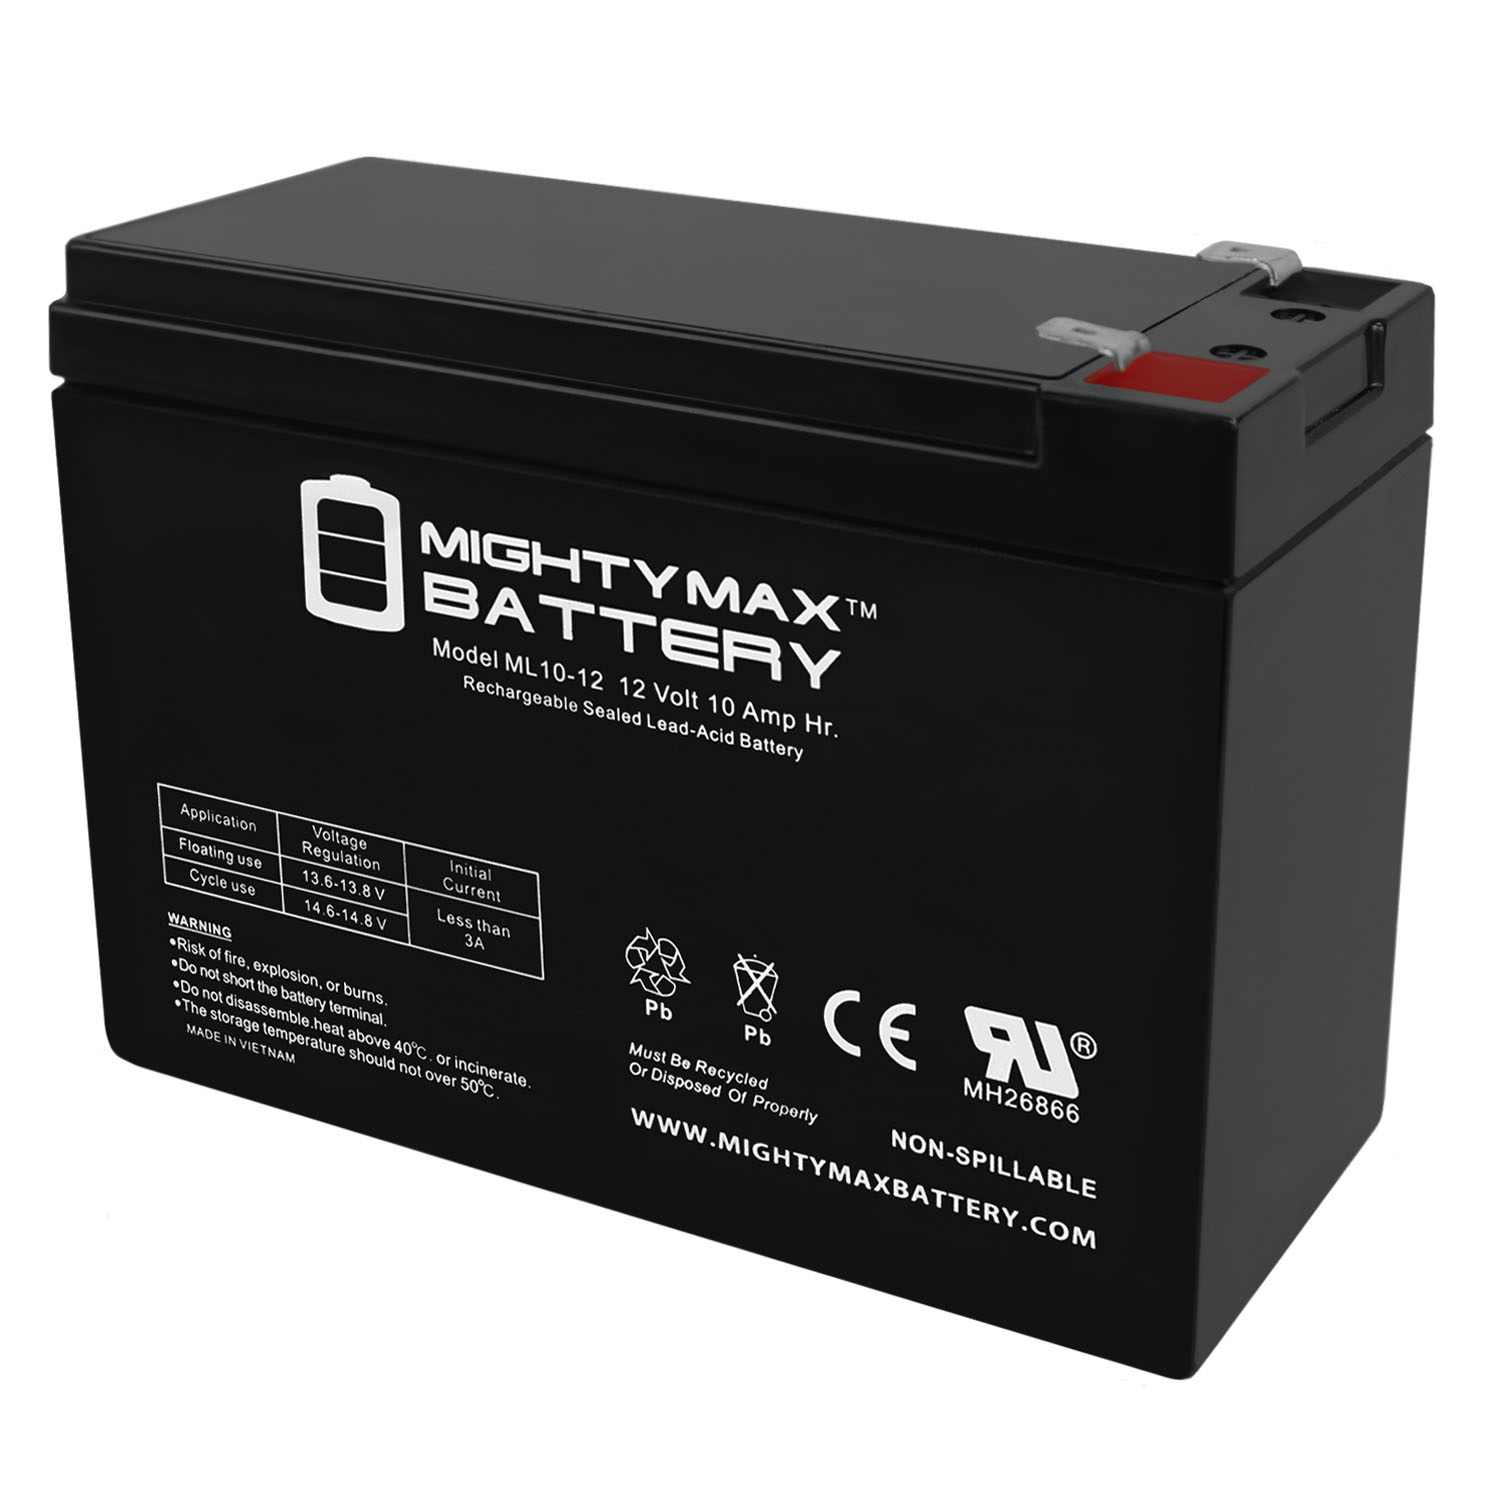 Batterie lithium 6V 10Ah Solise